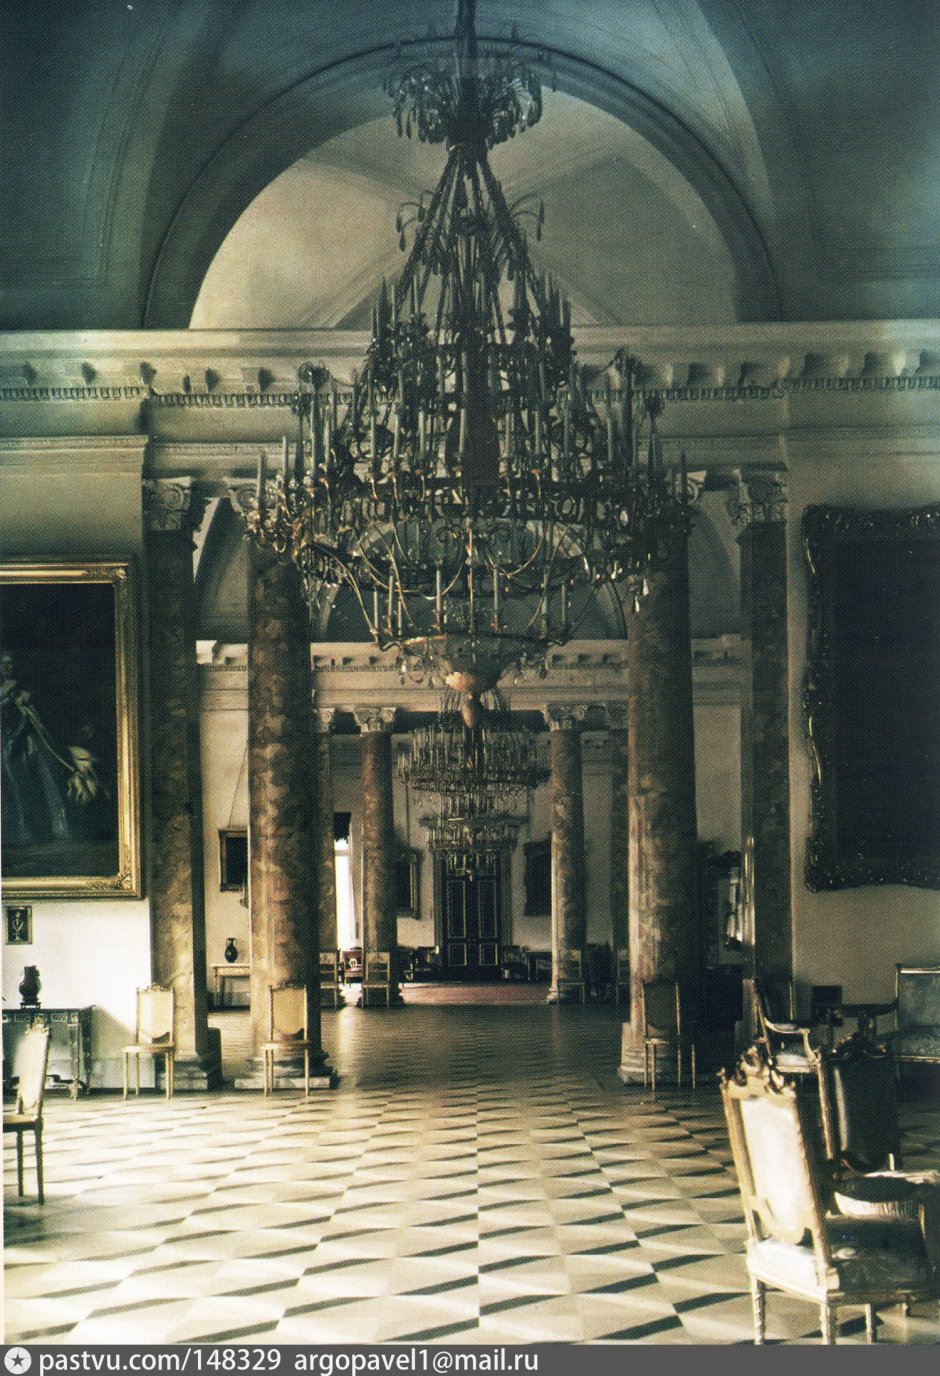 Александровский дворец полукруглый зал